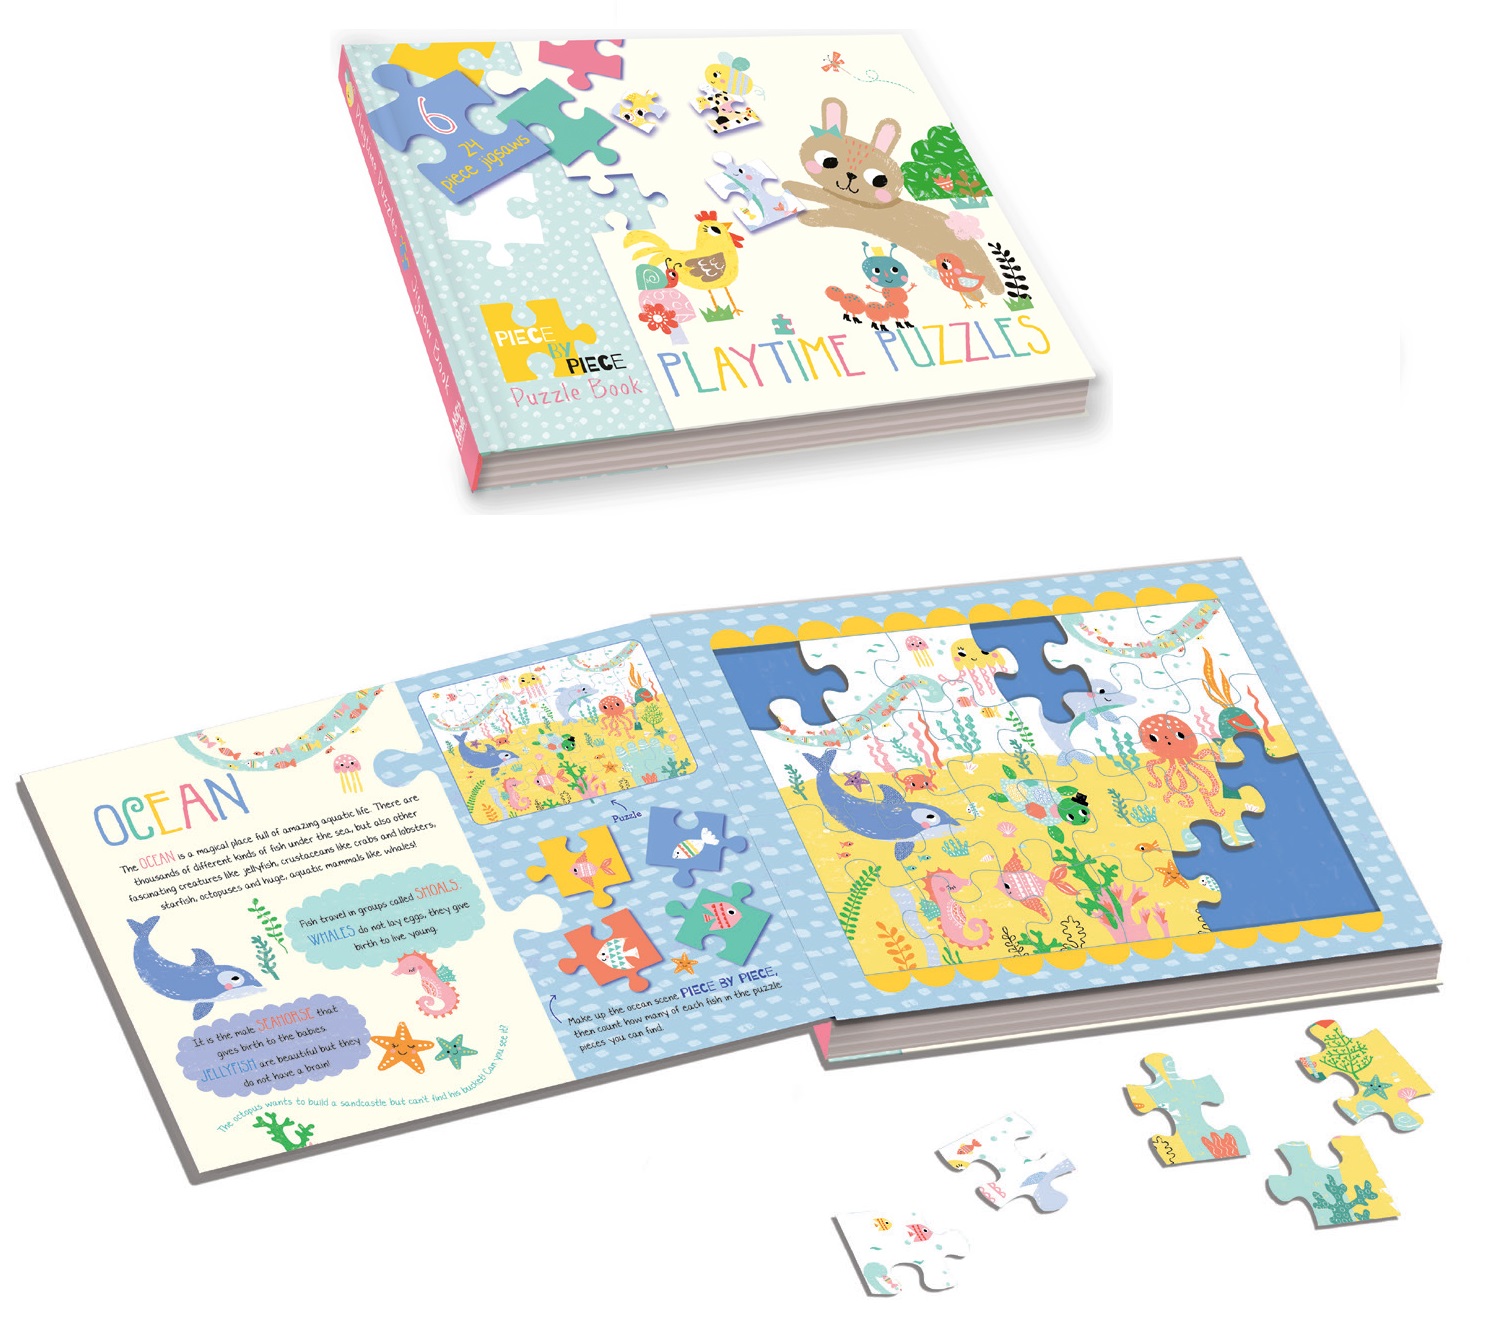 Sách xếp hình tương tác: Thế giới động vật - Playtime Puzzles (Jigsaw book)